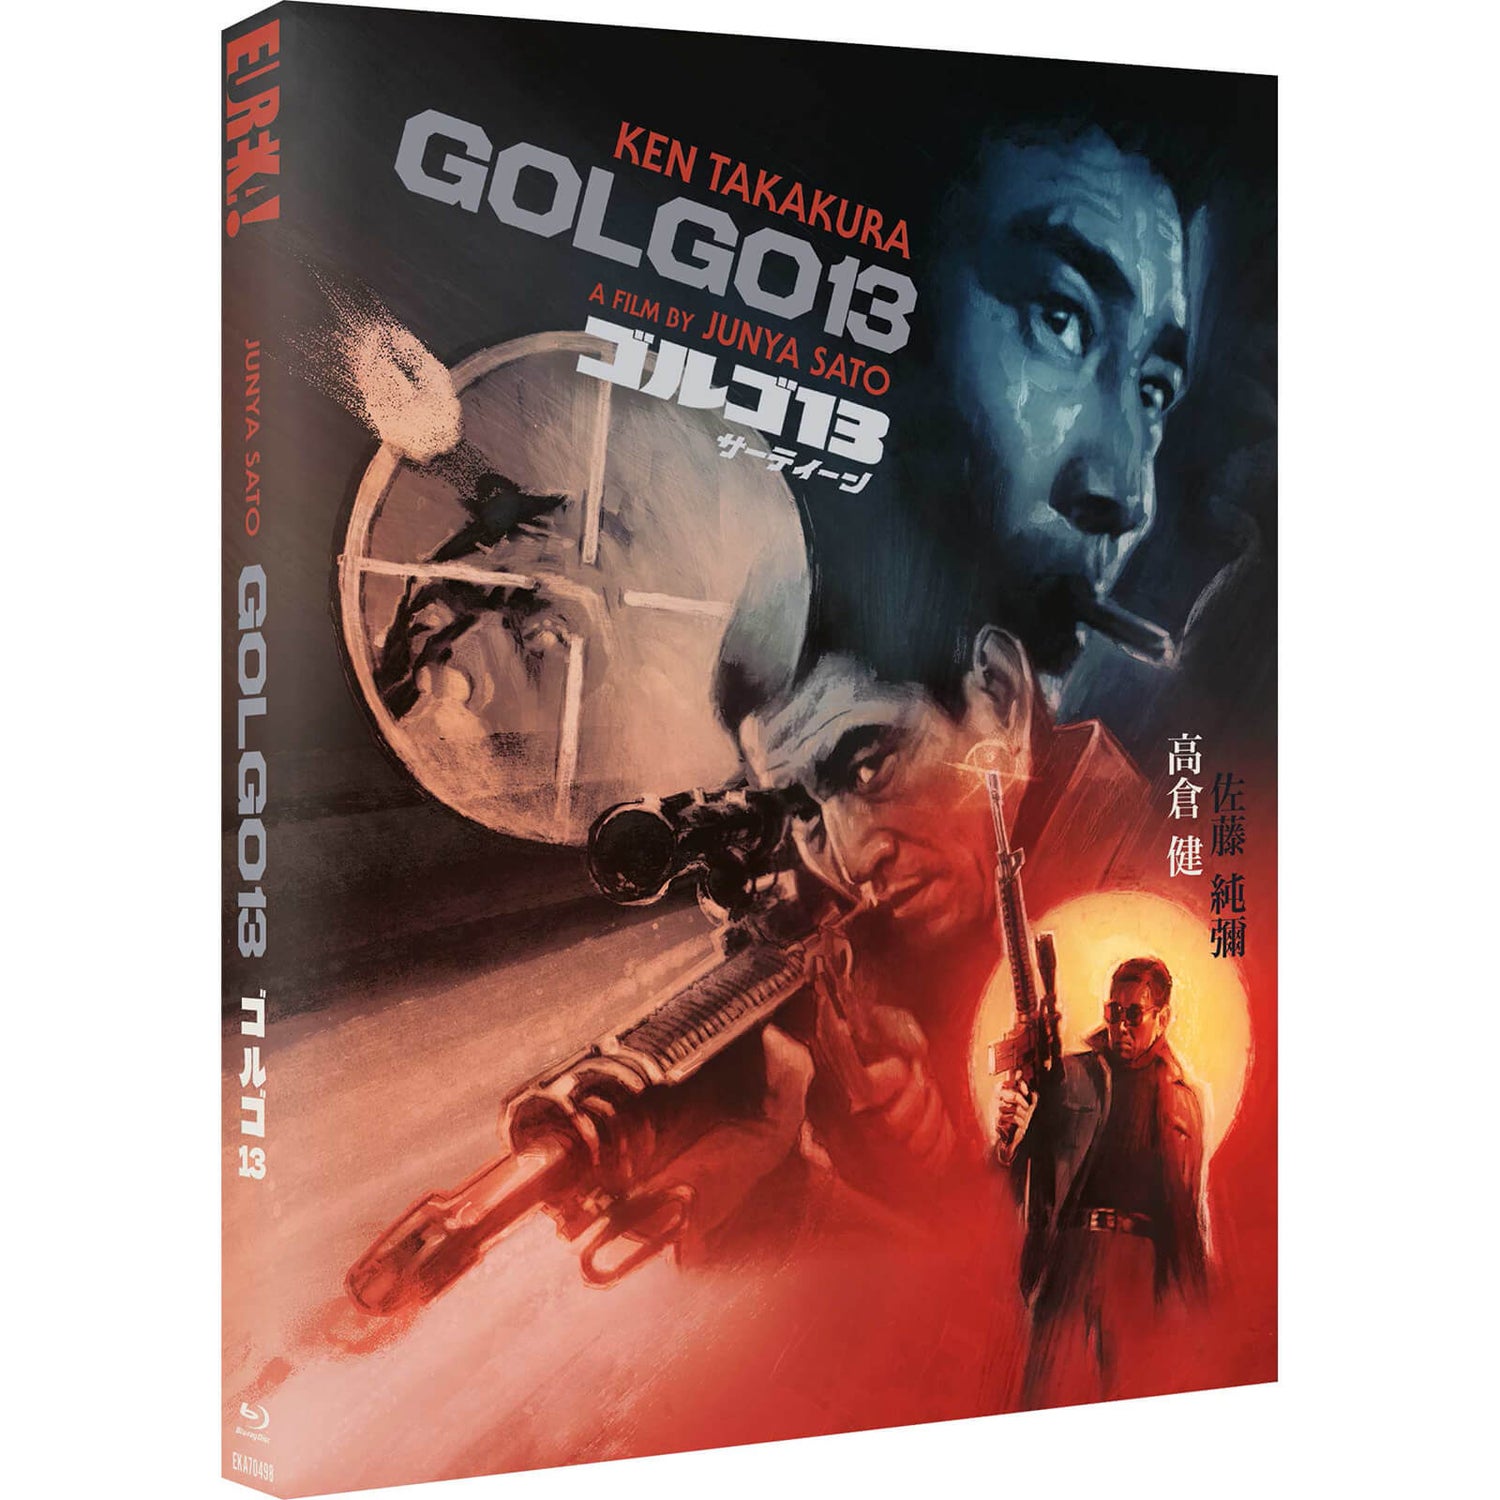 Golgo 13 Special Edition (Eureka Classics)